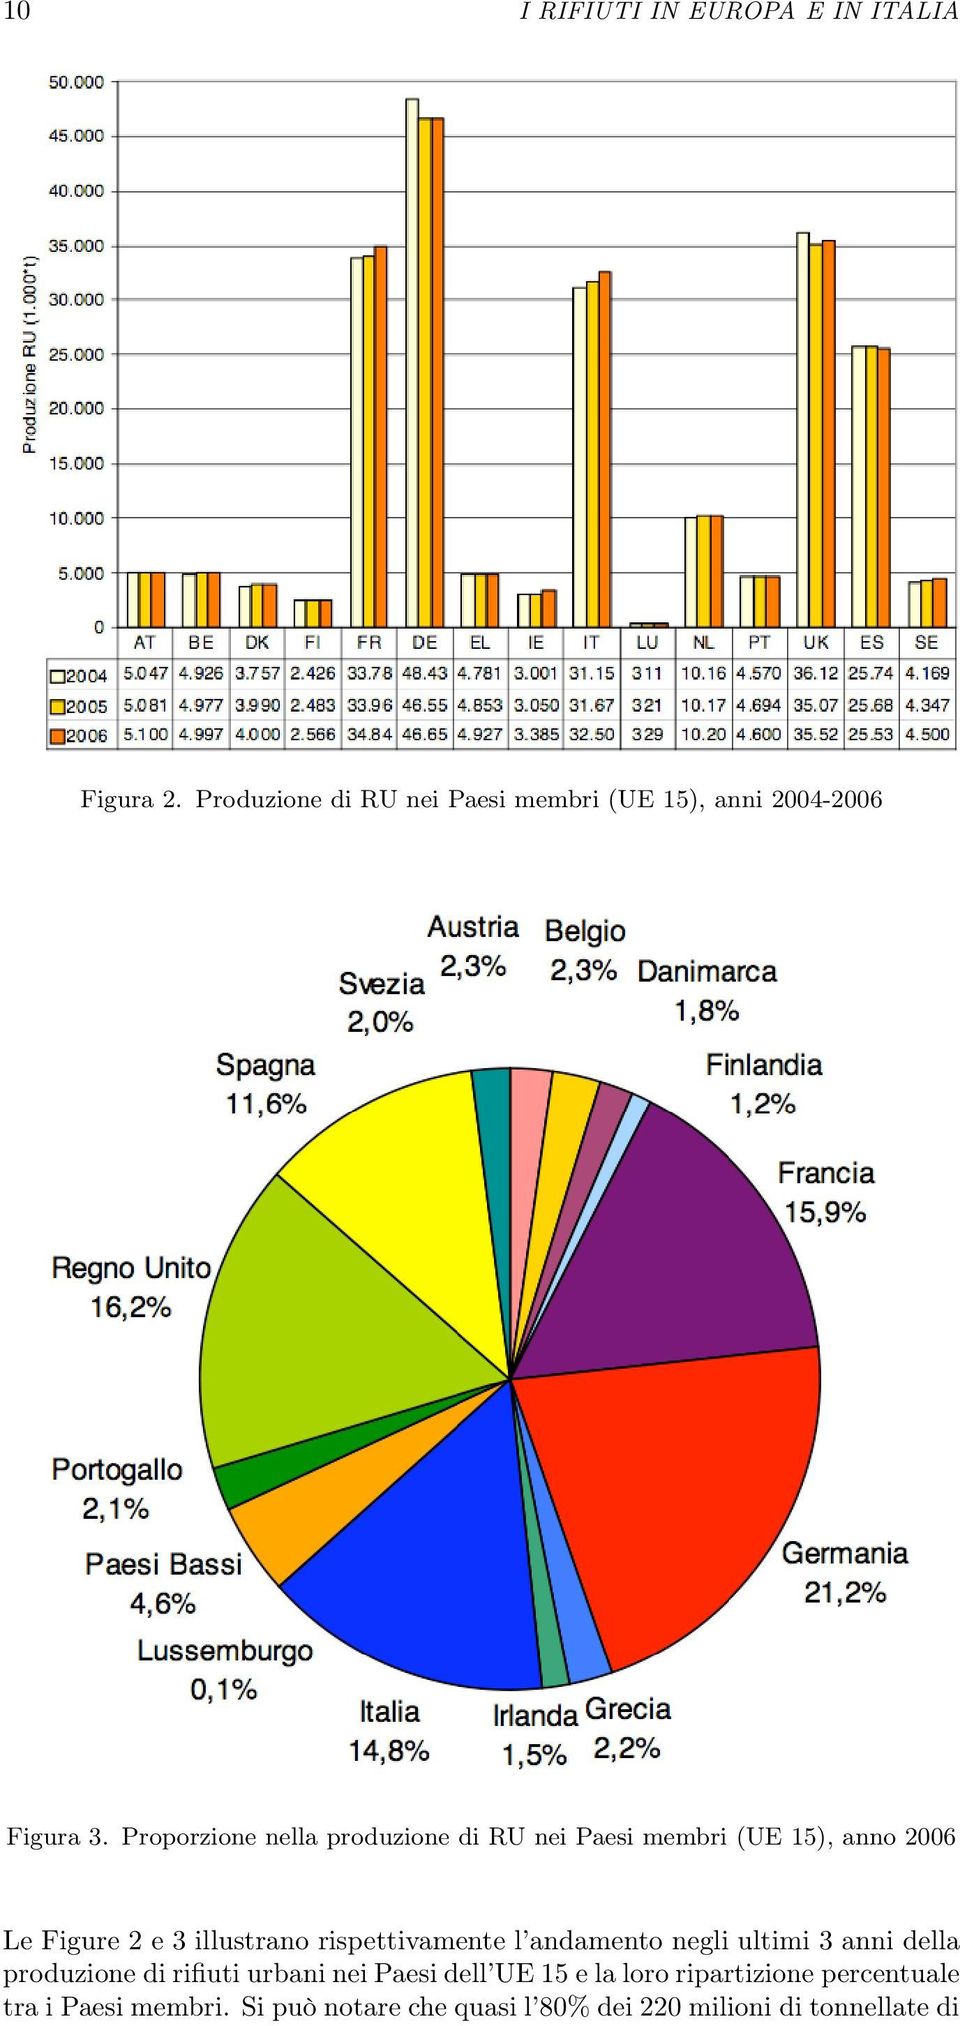 Proporzione nella produzione di RU nei Paesi membri (UE 15), anno 2006 Le Figure 2 e 3 illustrano